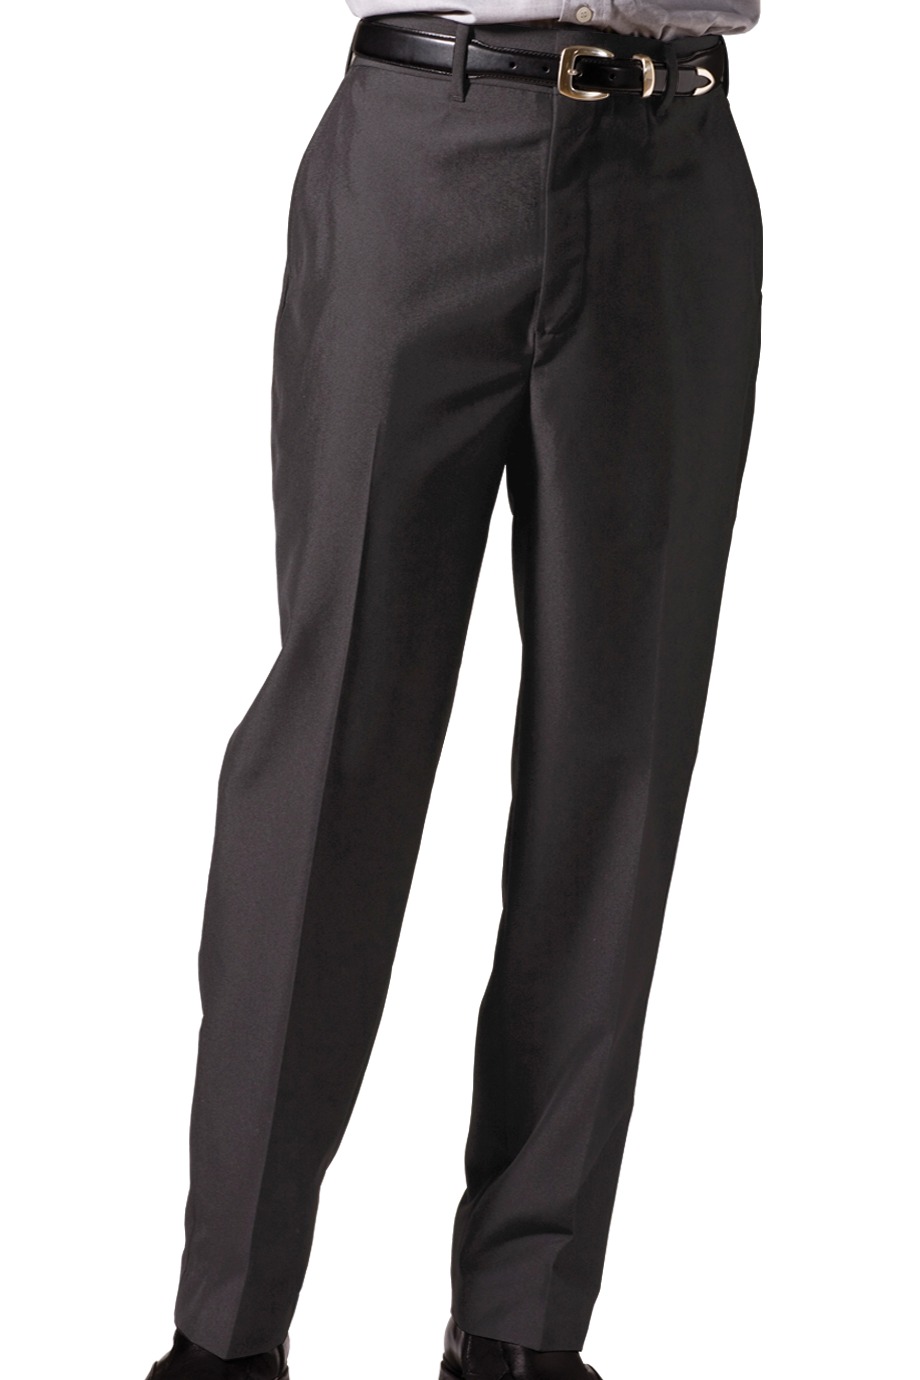 Edwards Garment 2750 - Men's Lightweight Wool Blend Flat Front Pant